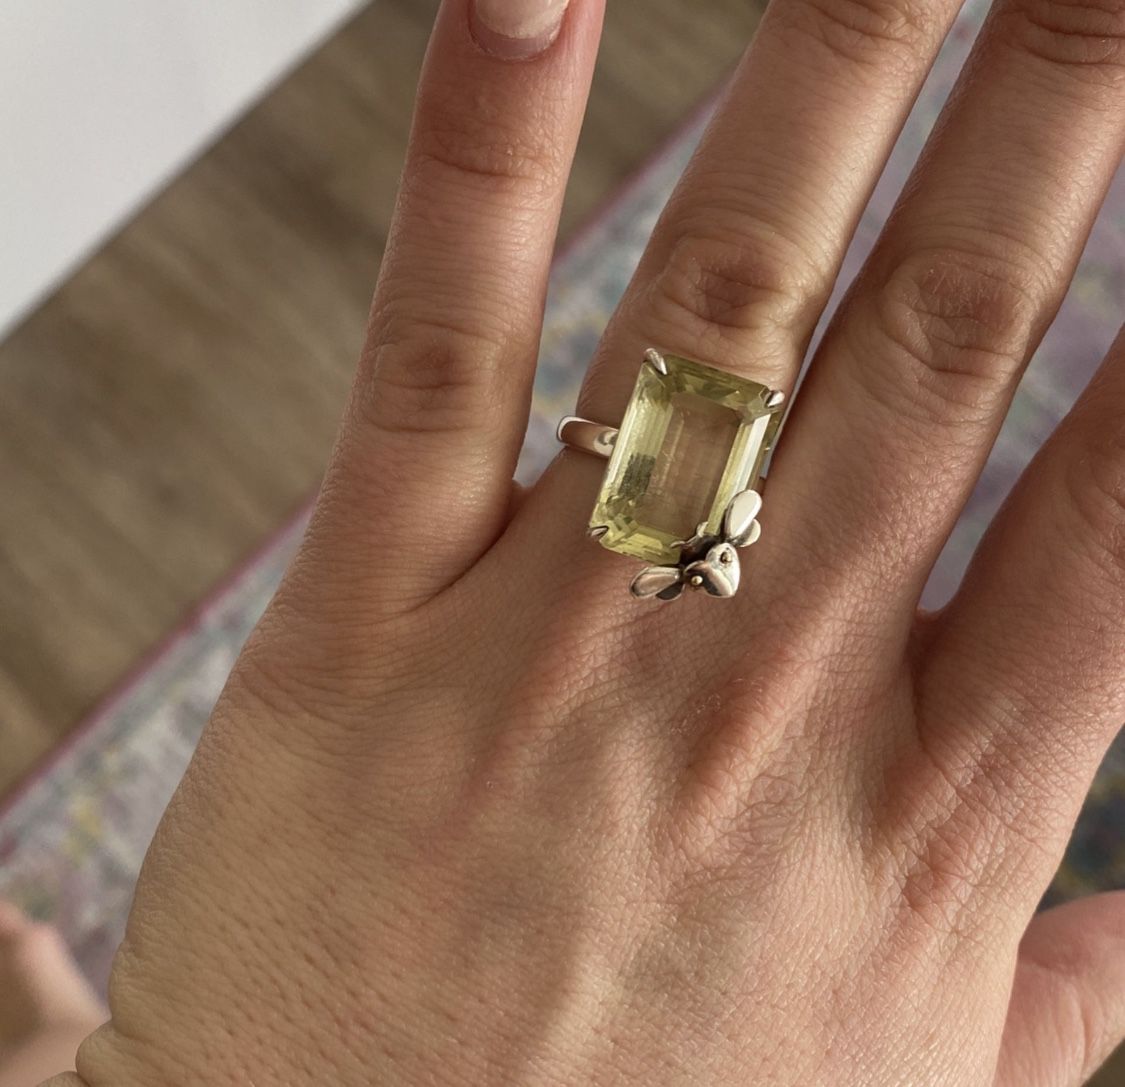 Tiffany’s Ring 💍 